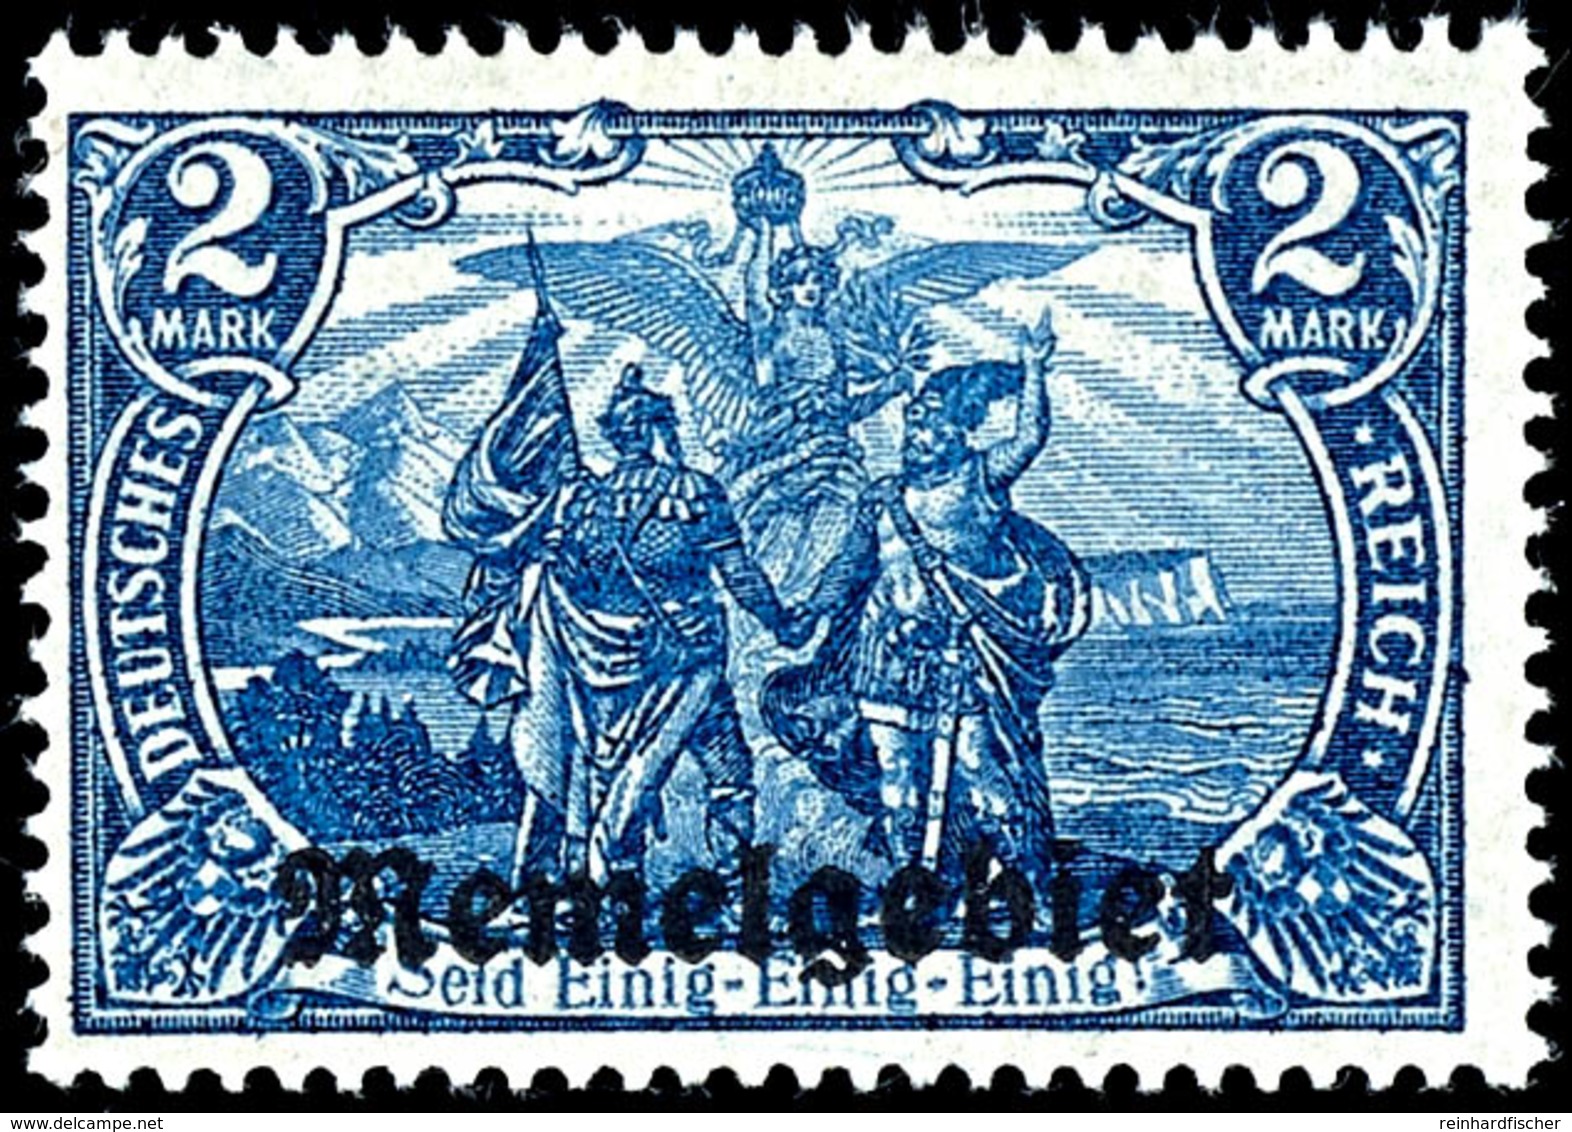 2 Mark Deutsches Reich Mit Aufdruck "Memelgebiet", Schwärzlichblau,  Tadellos Ungebraucht Mit Originalgummierung, Fotobe - Memelland 1923